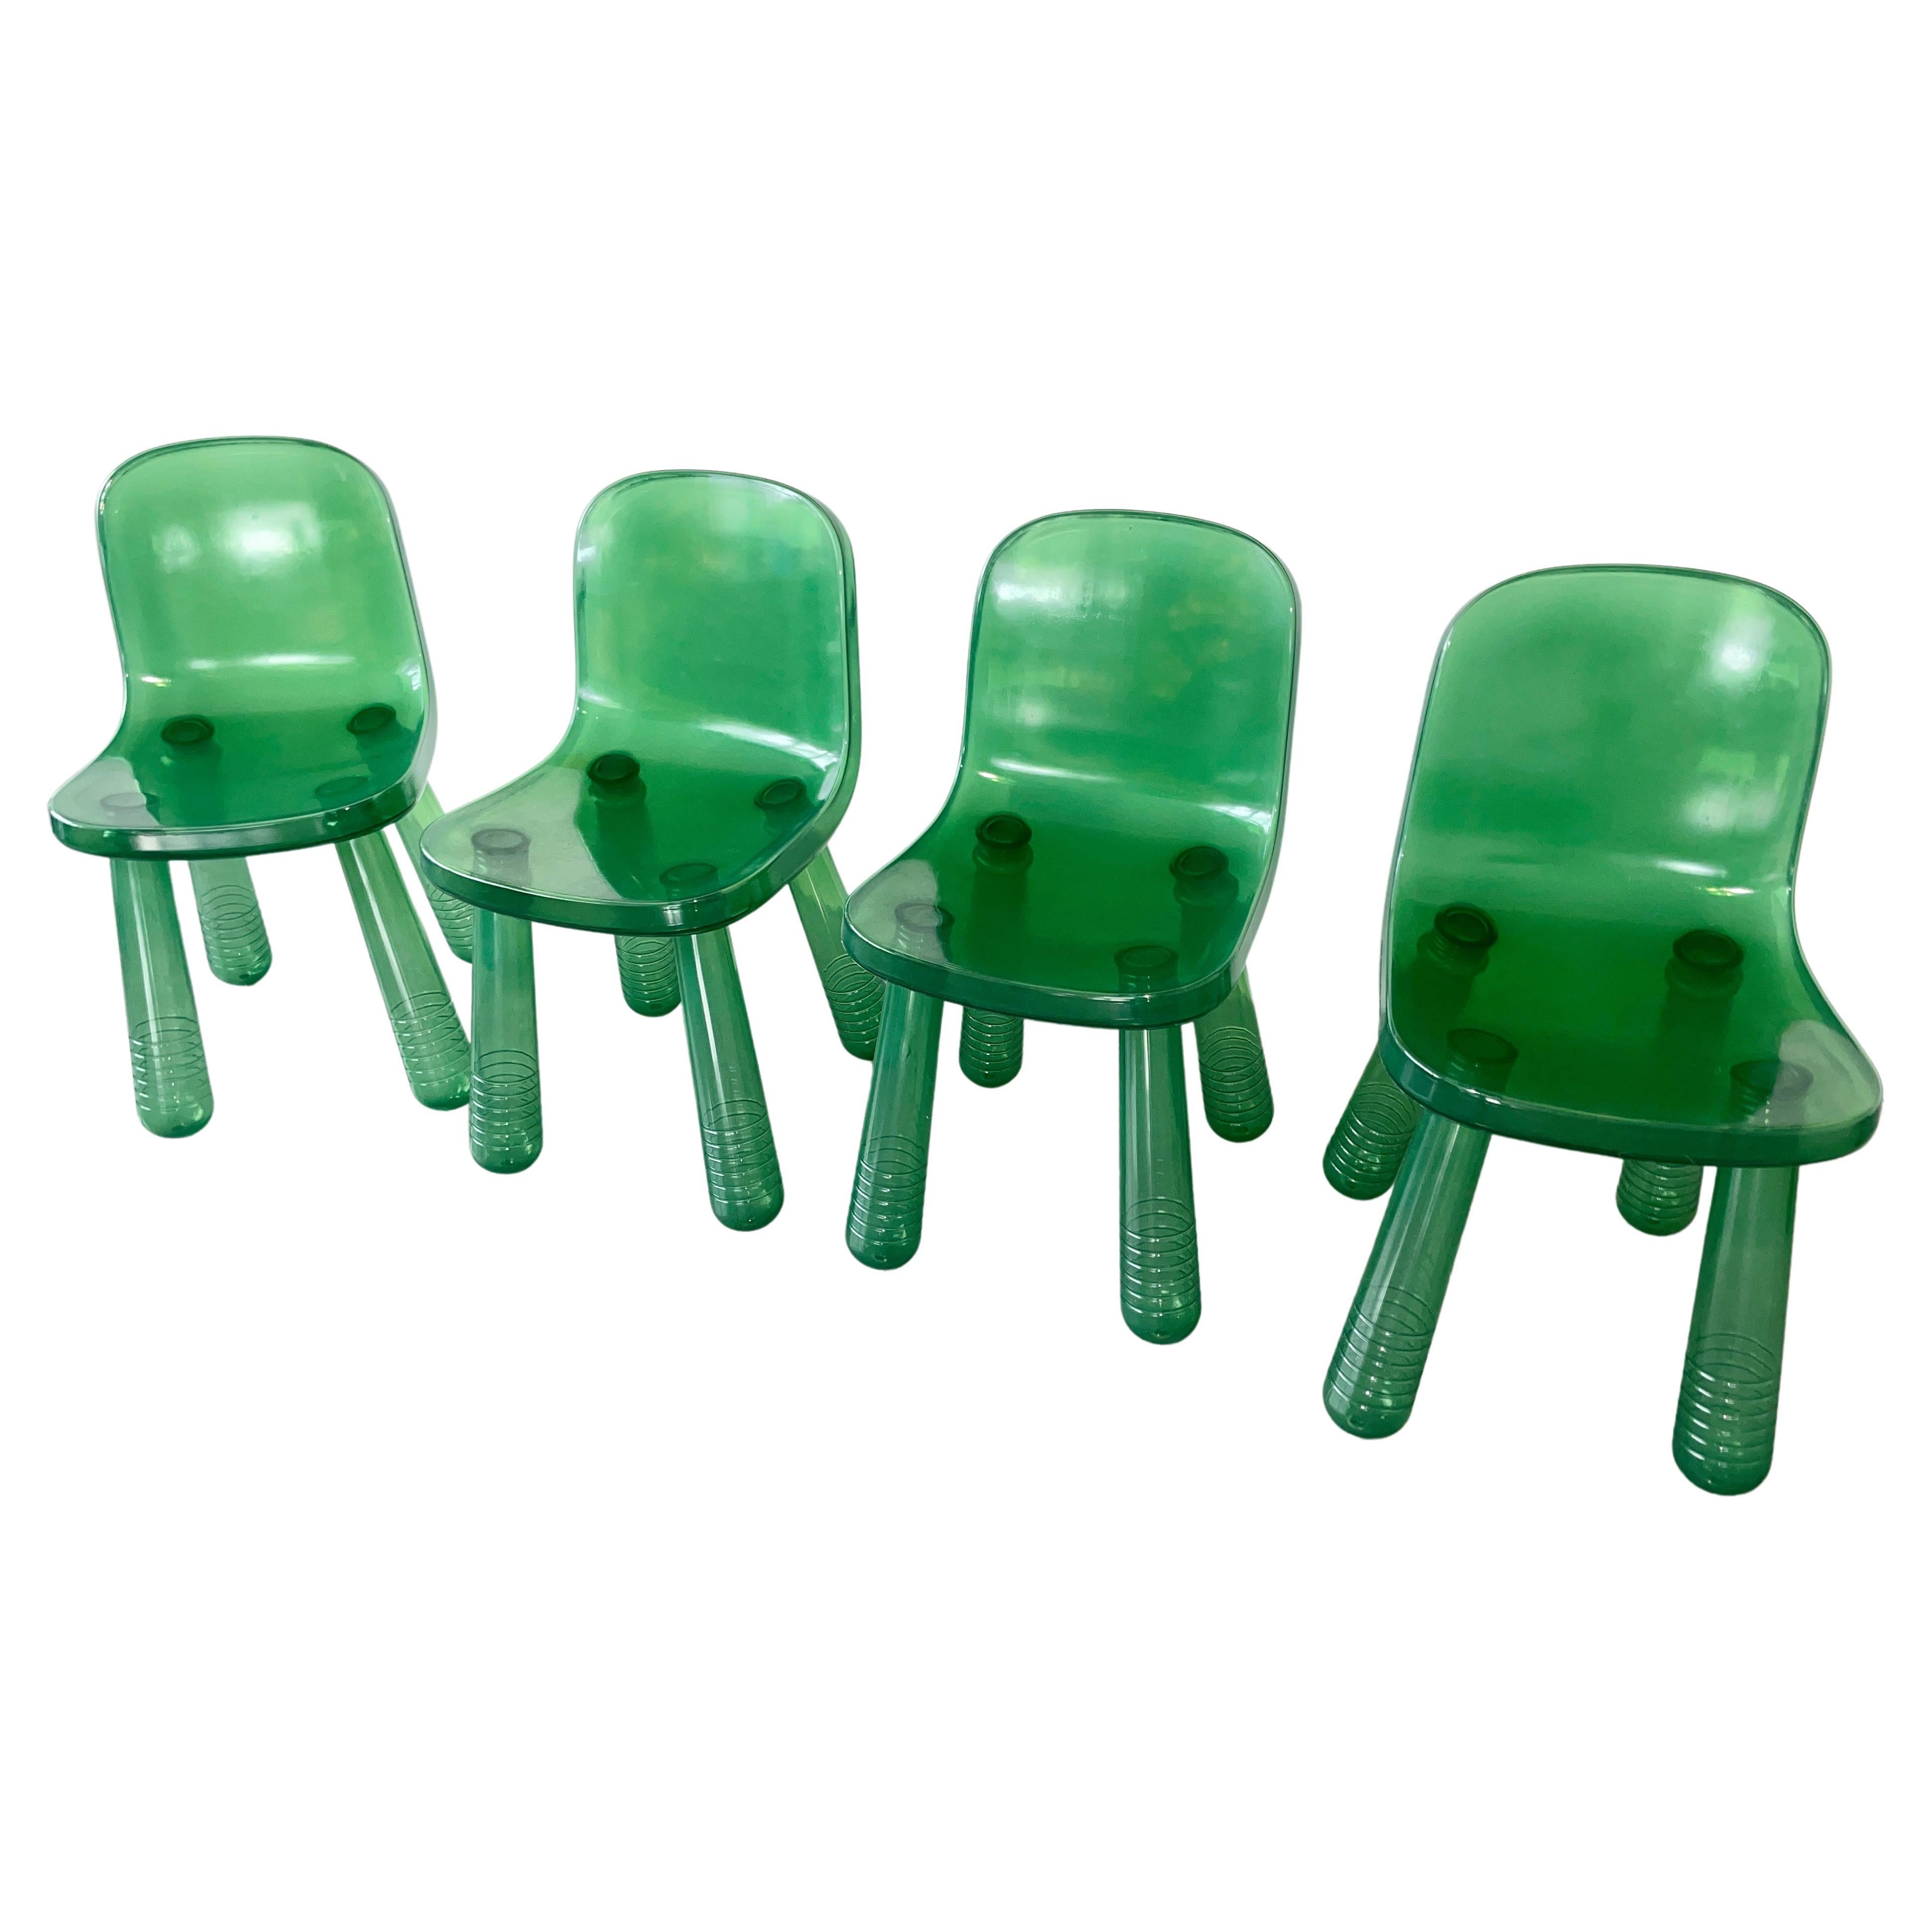 Chaise étincelante
En 2010, lors du Salone Internasional del Mobile, le designer néerlandais Marcel Wanders a présenté une chaise fabriquée selon la même technique de moulage par soufflage que celle utilisée pour la fabrication des bouteilles